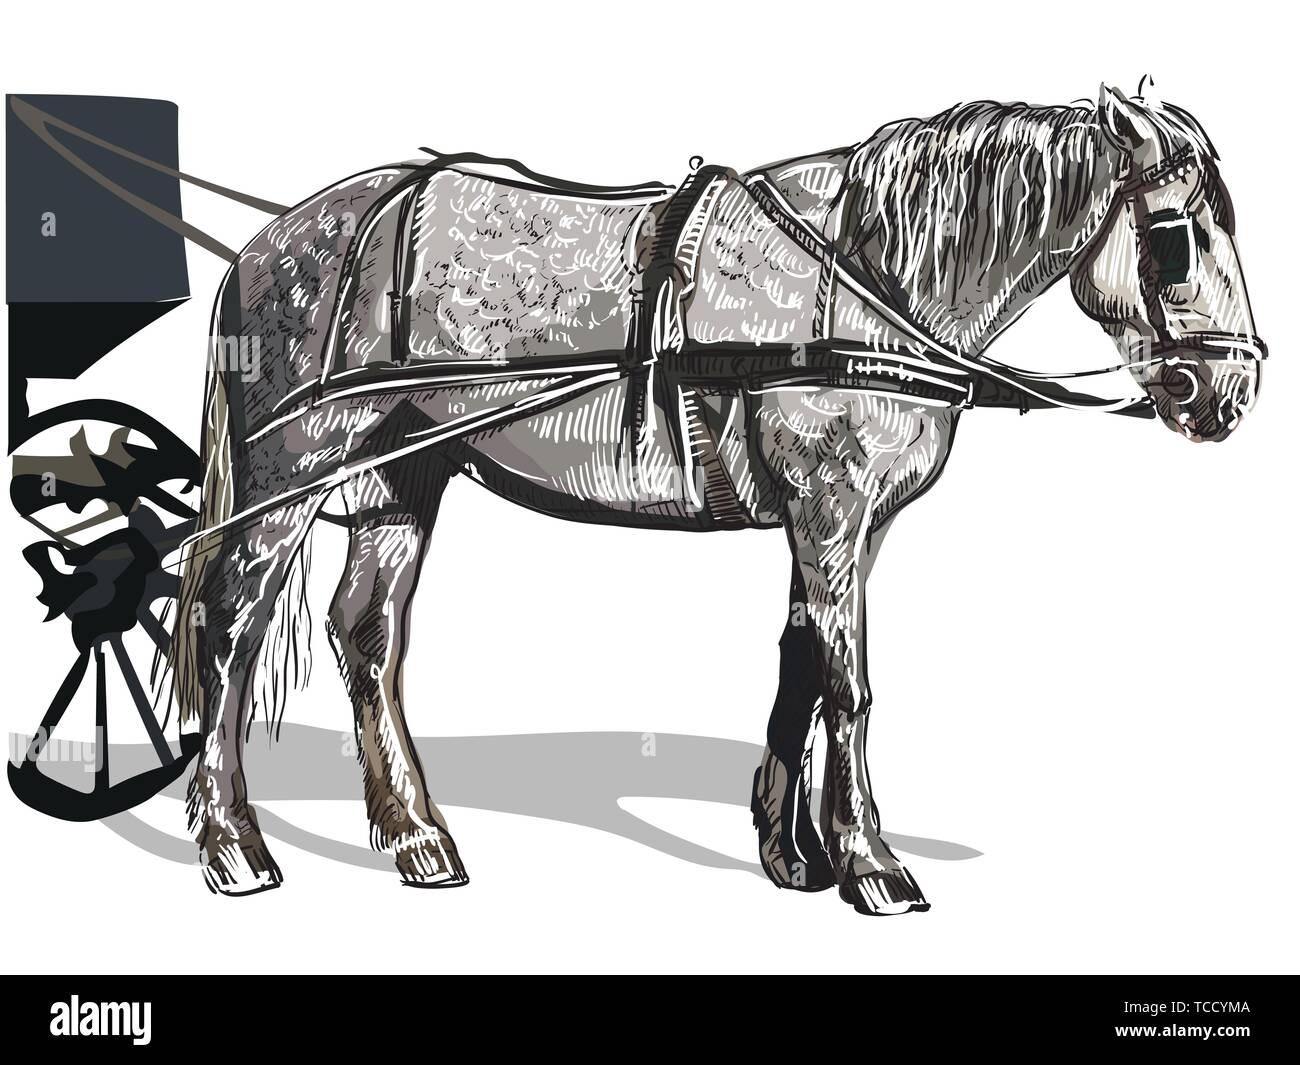 Vektor Handzeichnung bunte Illustration Pferd steht im Profil. Monochromen vector Skizze hand Zeichnung Abbildung auf weißem Hintergrund. Stock Vektor